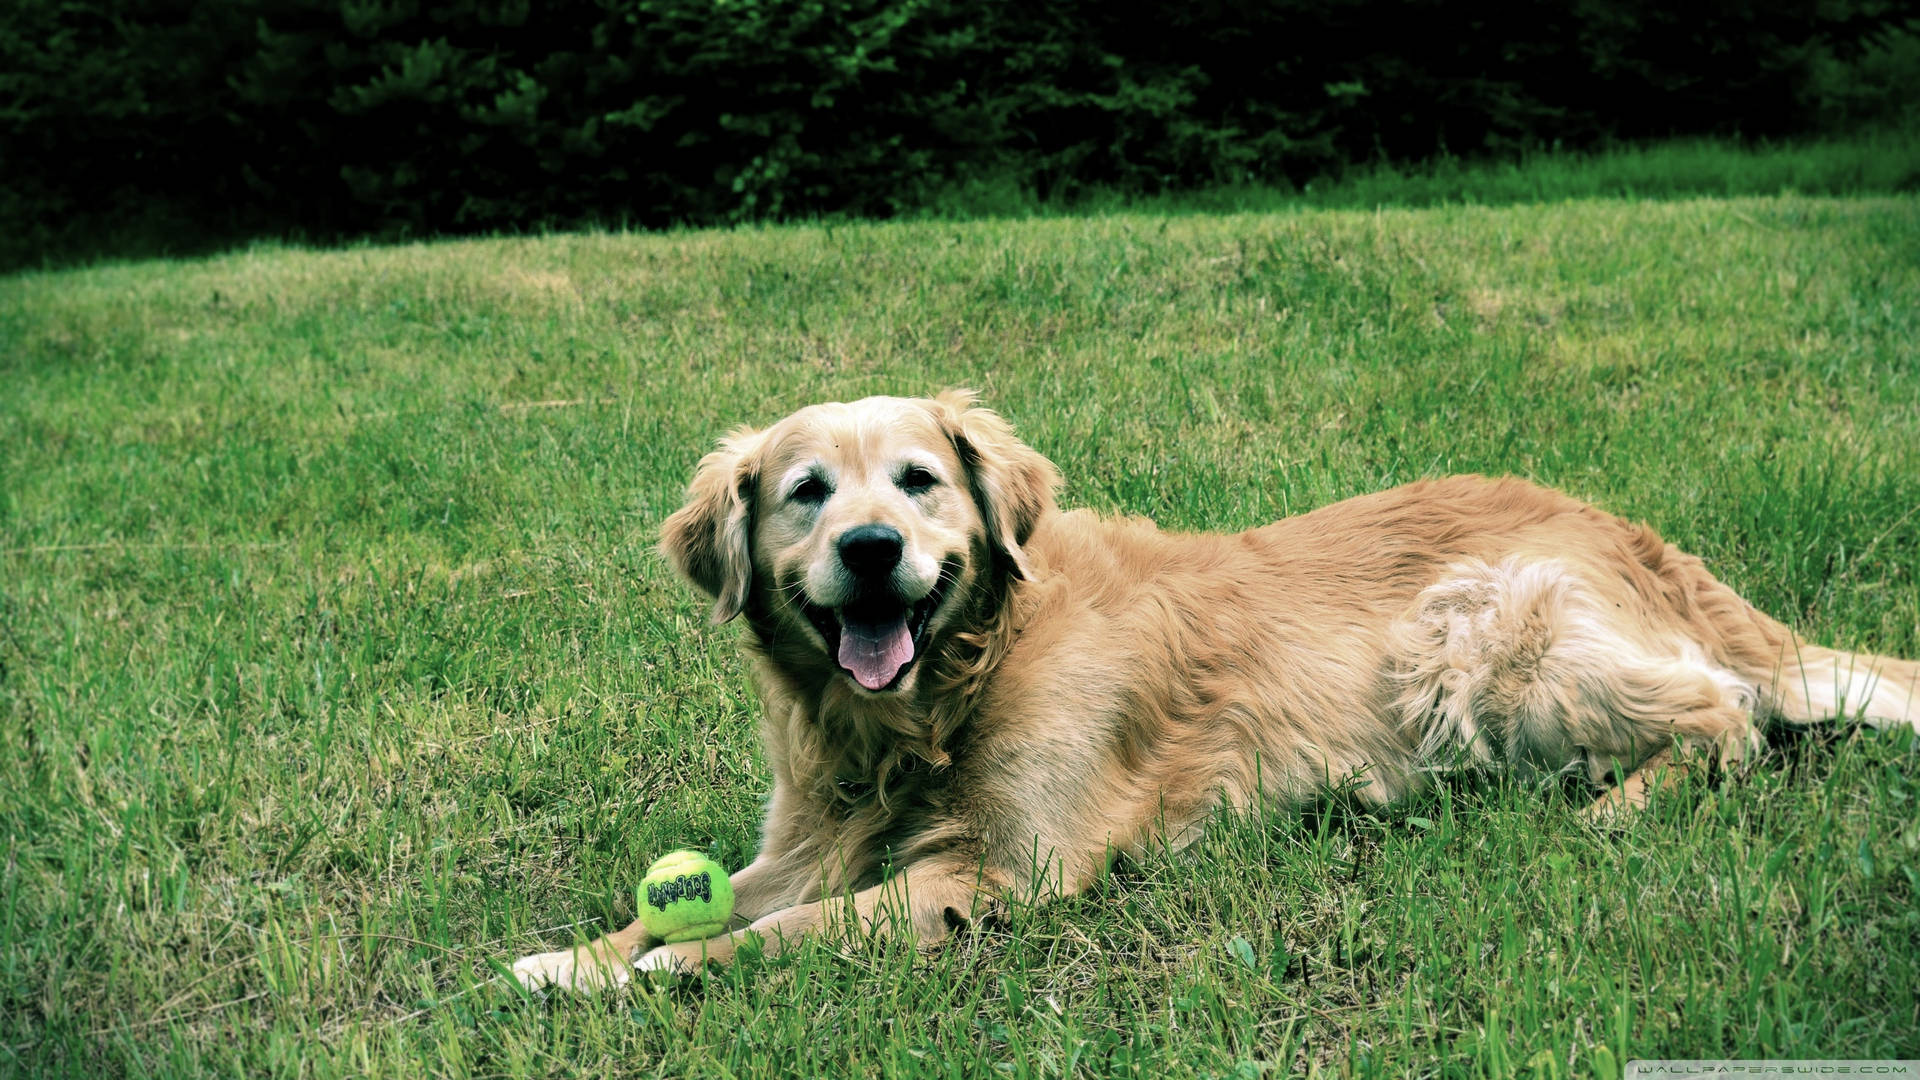 Cute Golden Retriever Dog On Grass Wallpaper